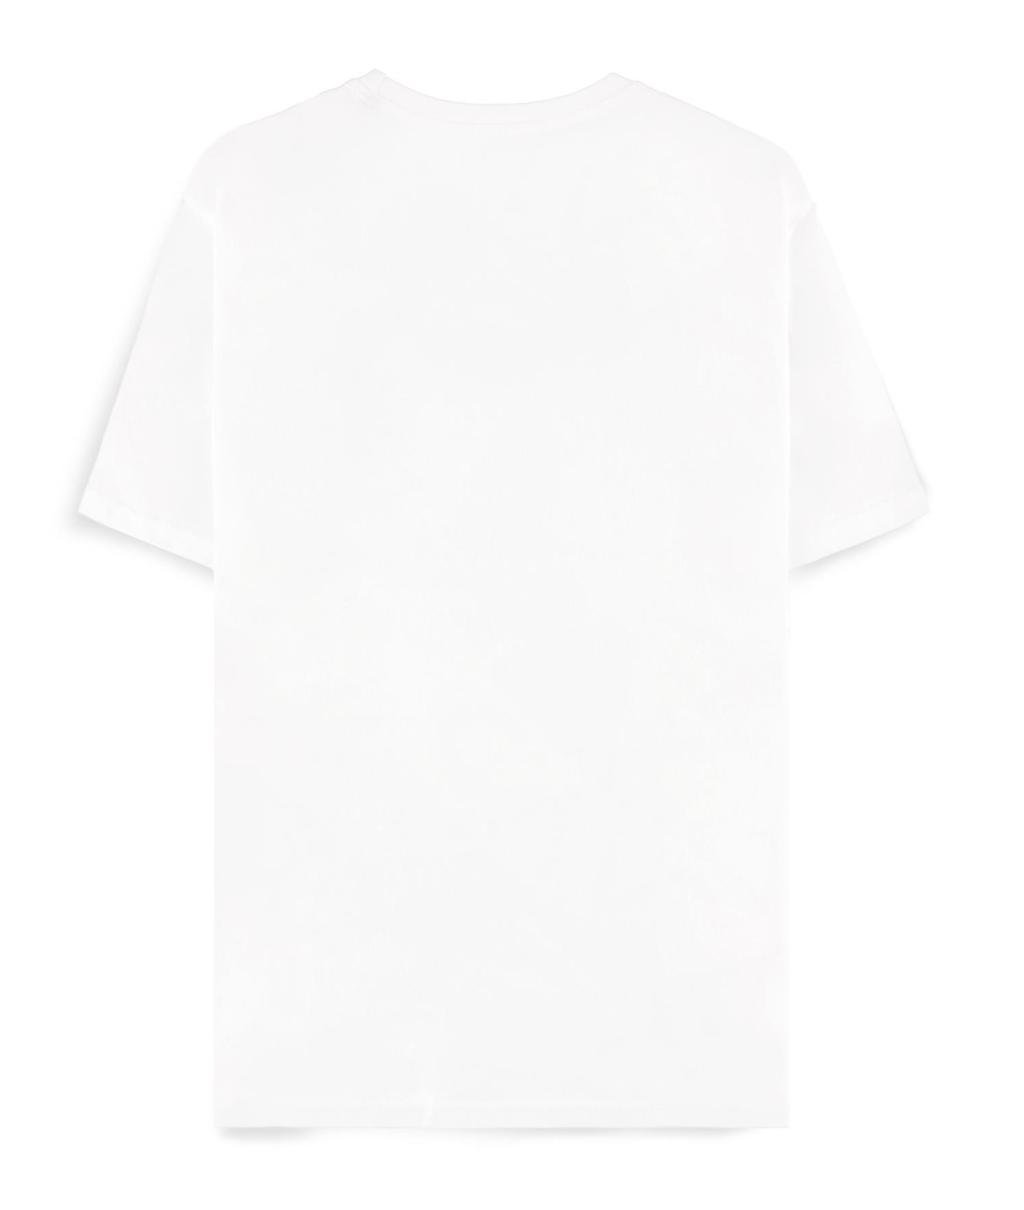 POKEMON - White Venusaur - Men's T-shirt (M)